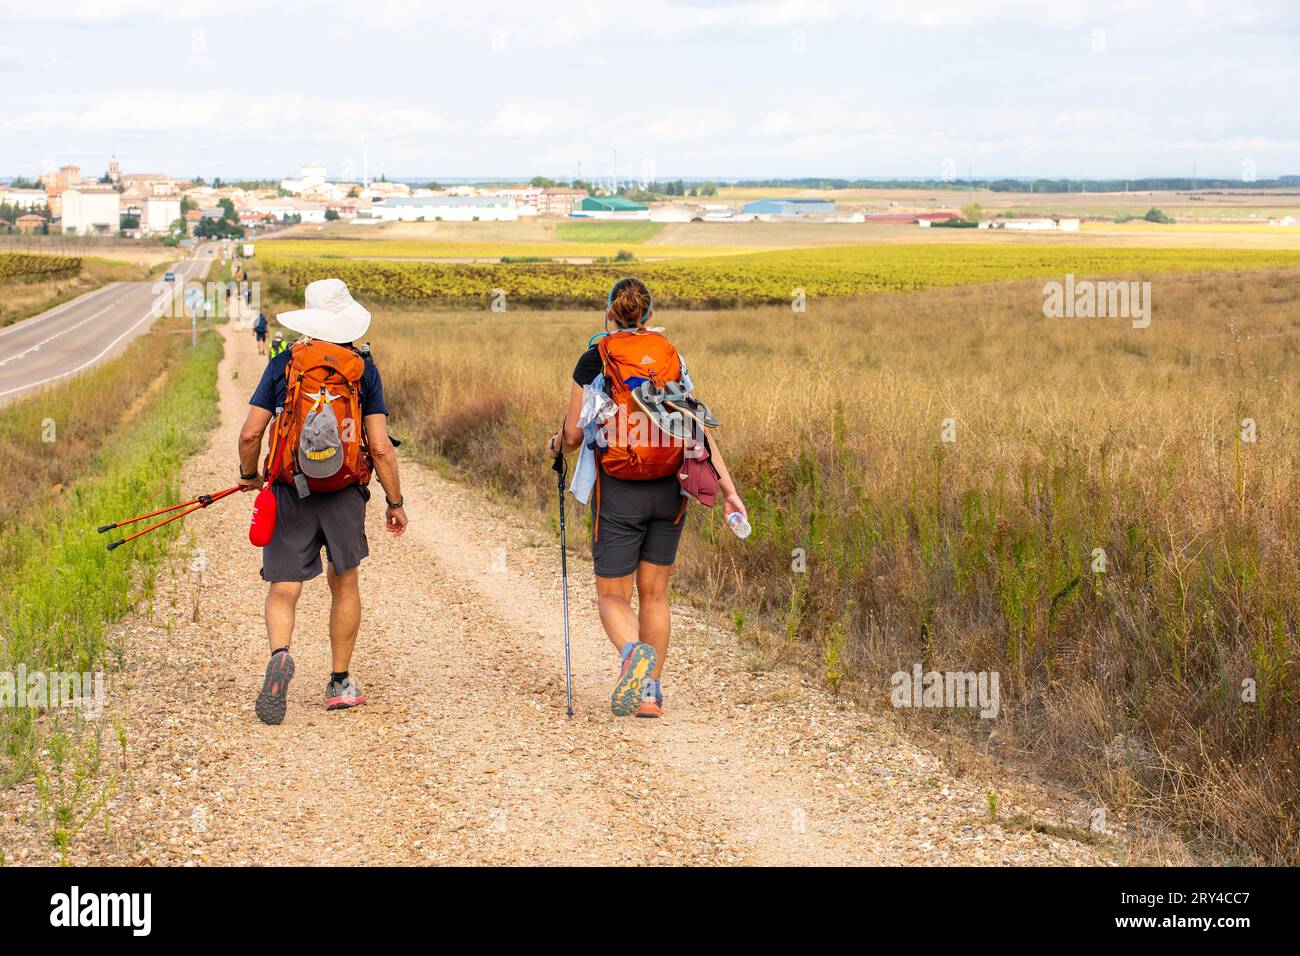 Pilger auf dem Jakobsweg, dem Jakobsweg, durch die spanische Landschaft zwischen Villalcazar und Carrion Spanien Stockfoto